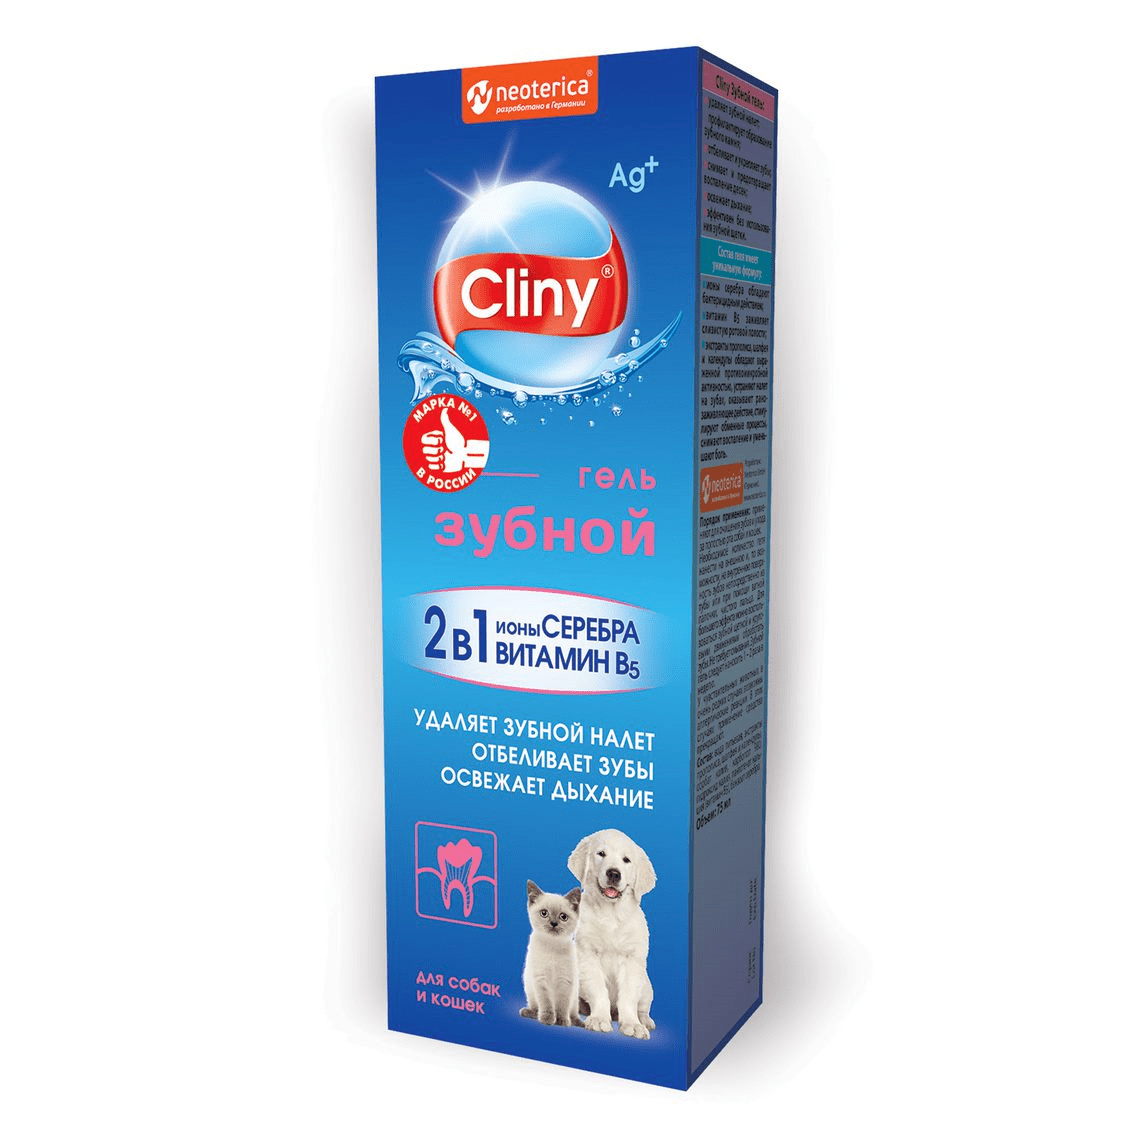 Cliny Cliny зубной гель Cliny, 75 мл (90 г)